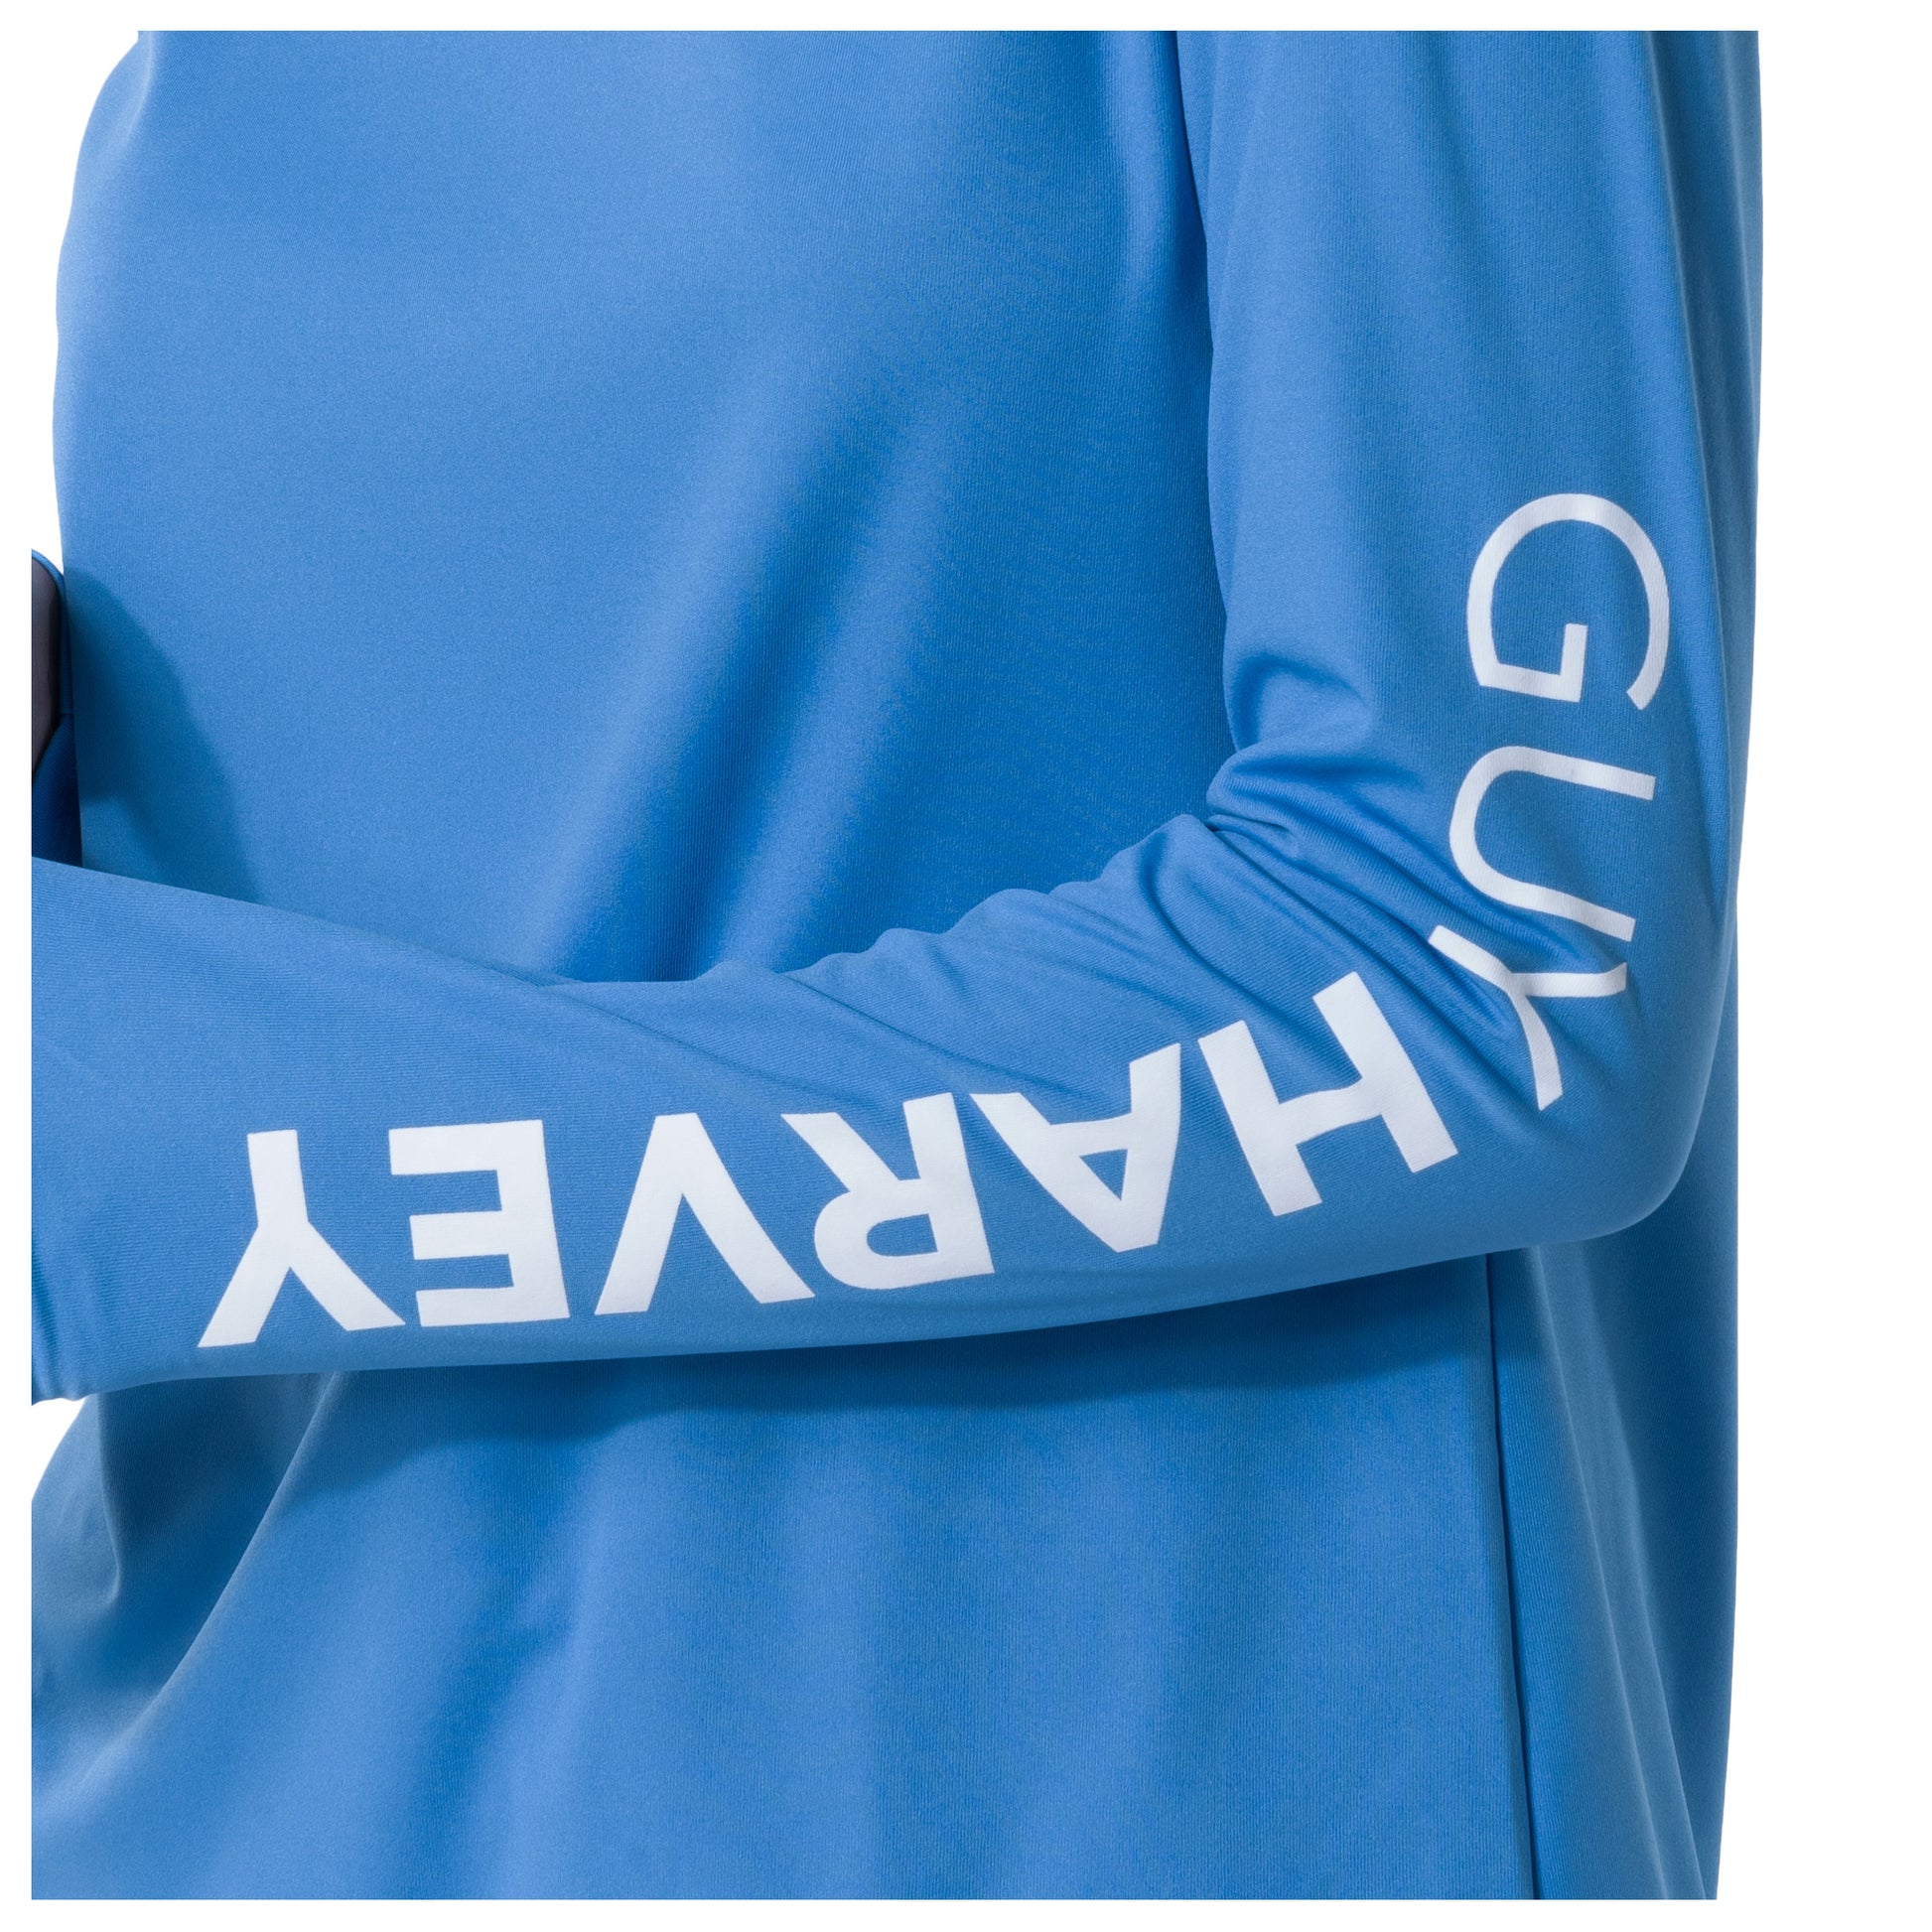 TGF Women's Sun Protection Fishing Shirts Long Sleeve Button Up Shirt with  Zippe